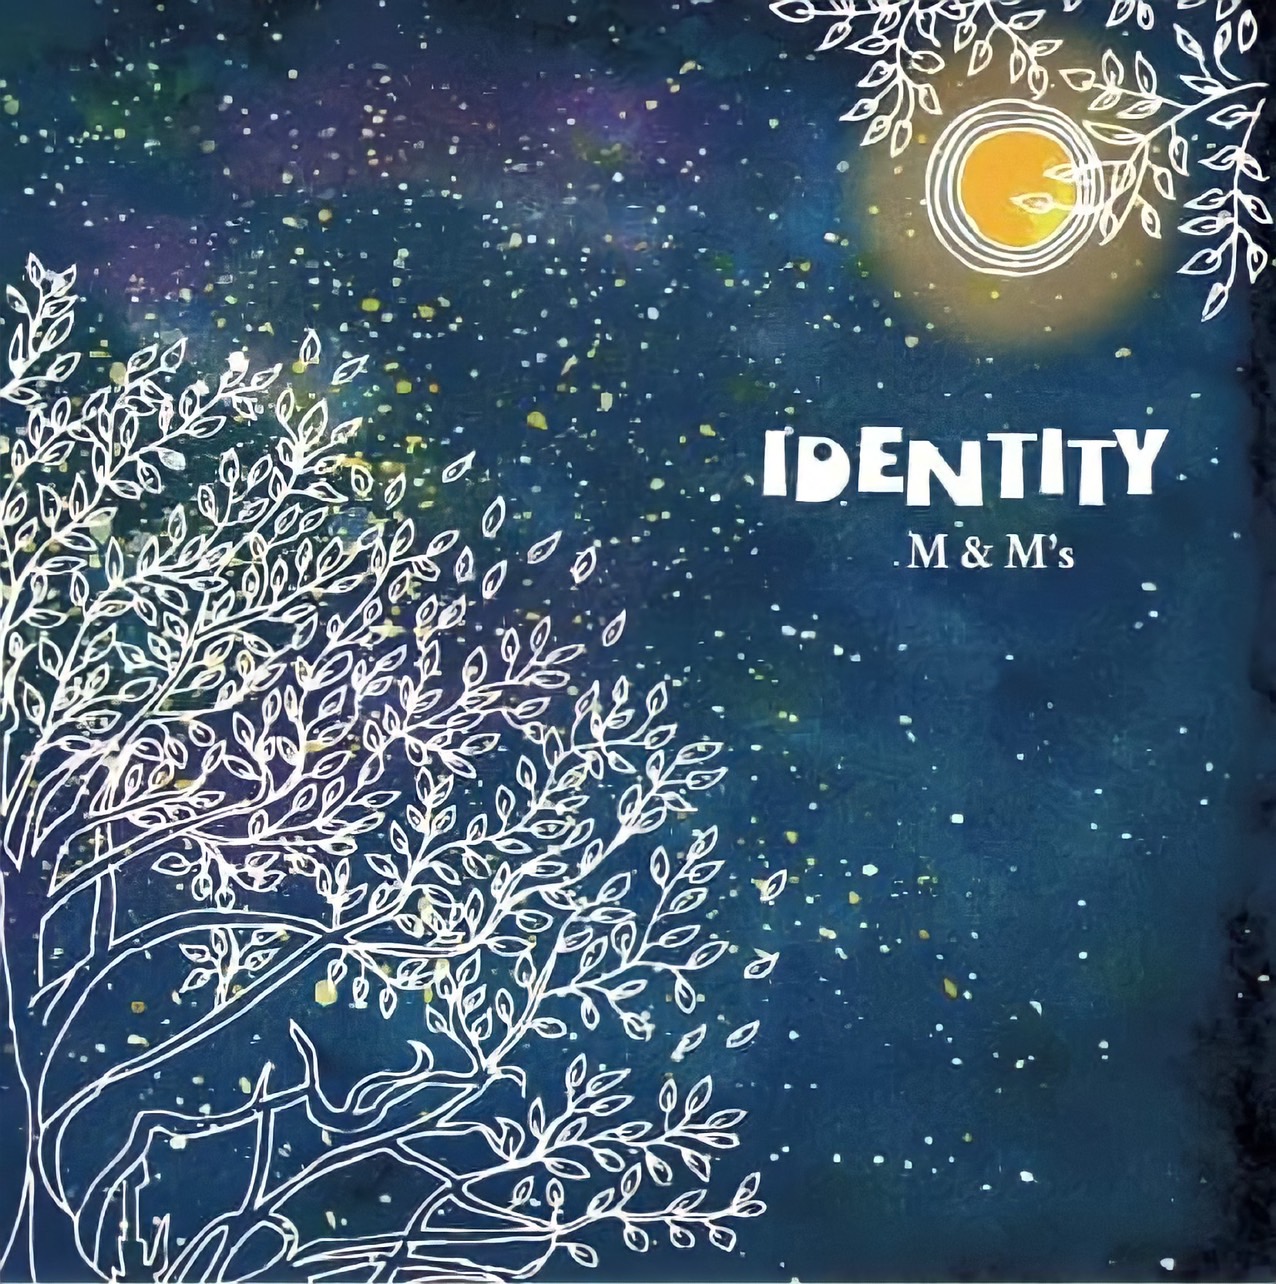 M&M's Album「IDENTITY」